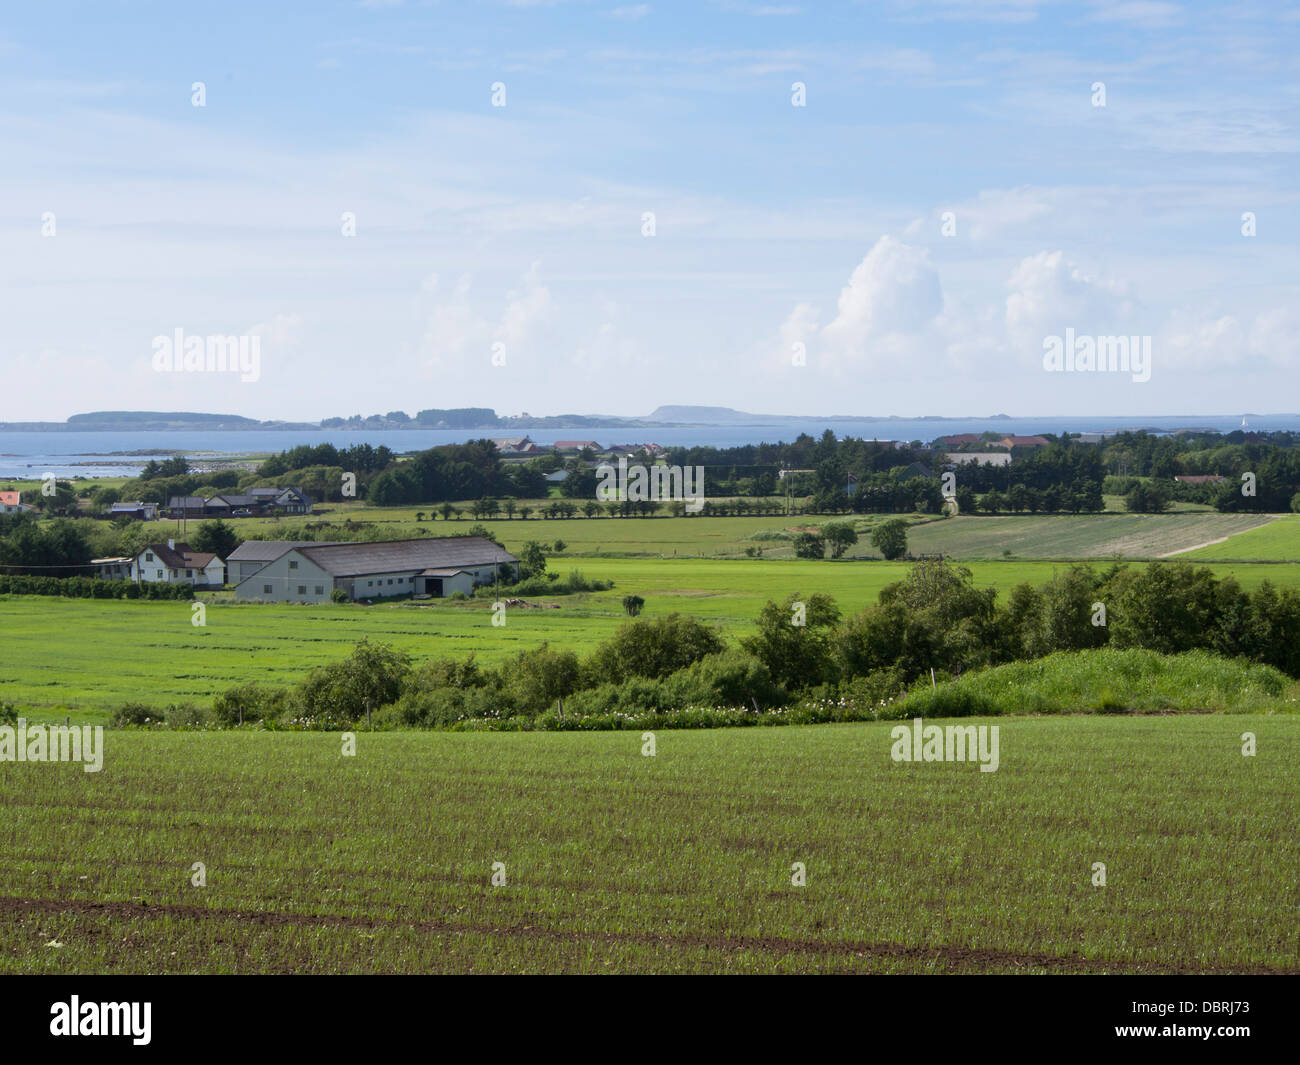 Piantate i campi in sola, un'area agricola al di fuori di Stavanger Norvegia , fattorie con il mare del Nord e come orizzonte il prossimo Foto Stock